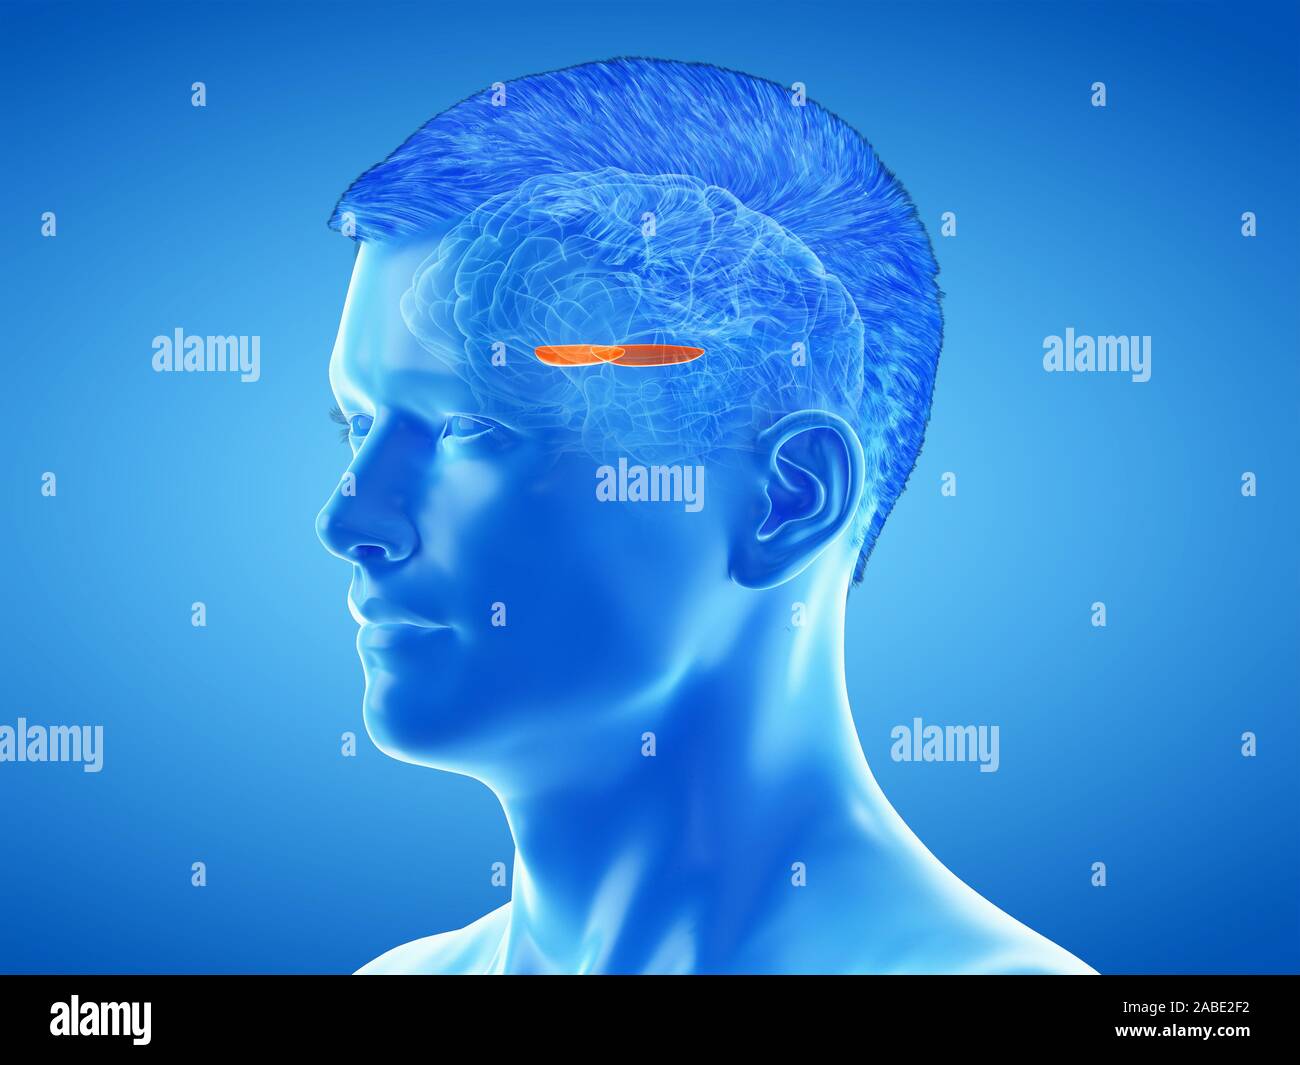 3D prestados ilustración médica precisa de la anatomía del cerebro - el Globus padillus medial Foto de stock